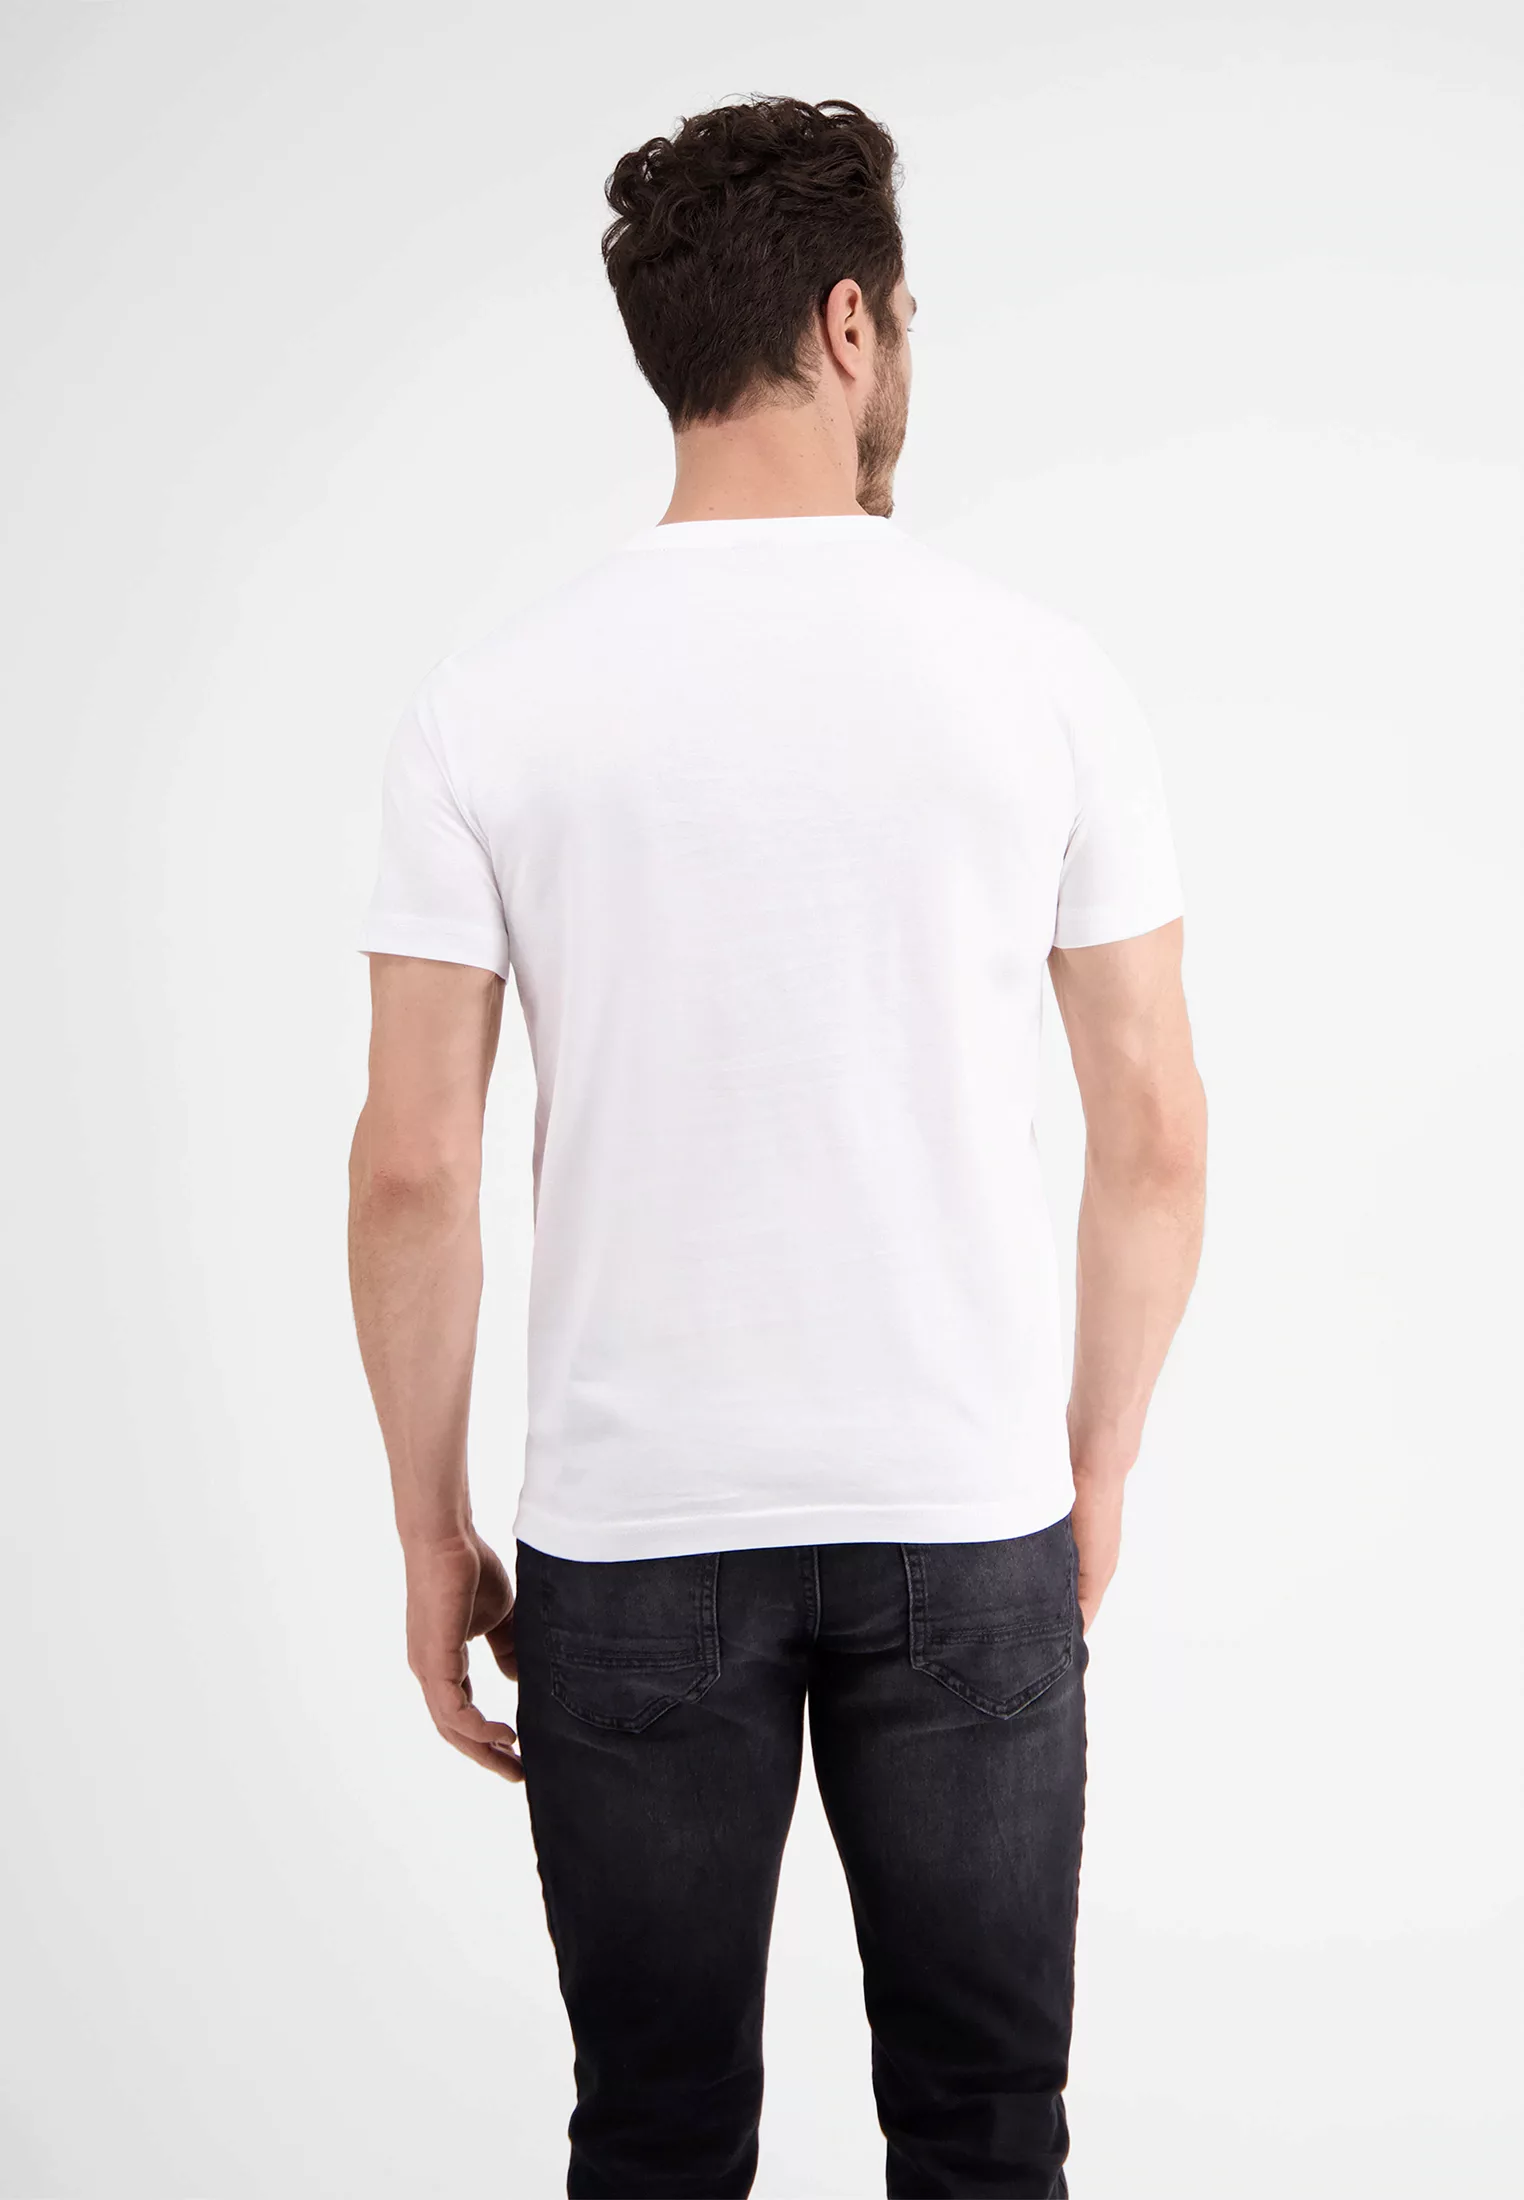 LERROS T-Shirt "LERROS T-Shirt *Lifestyle for every day*" günstig online kaufen